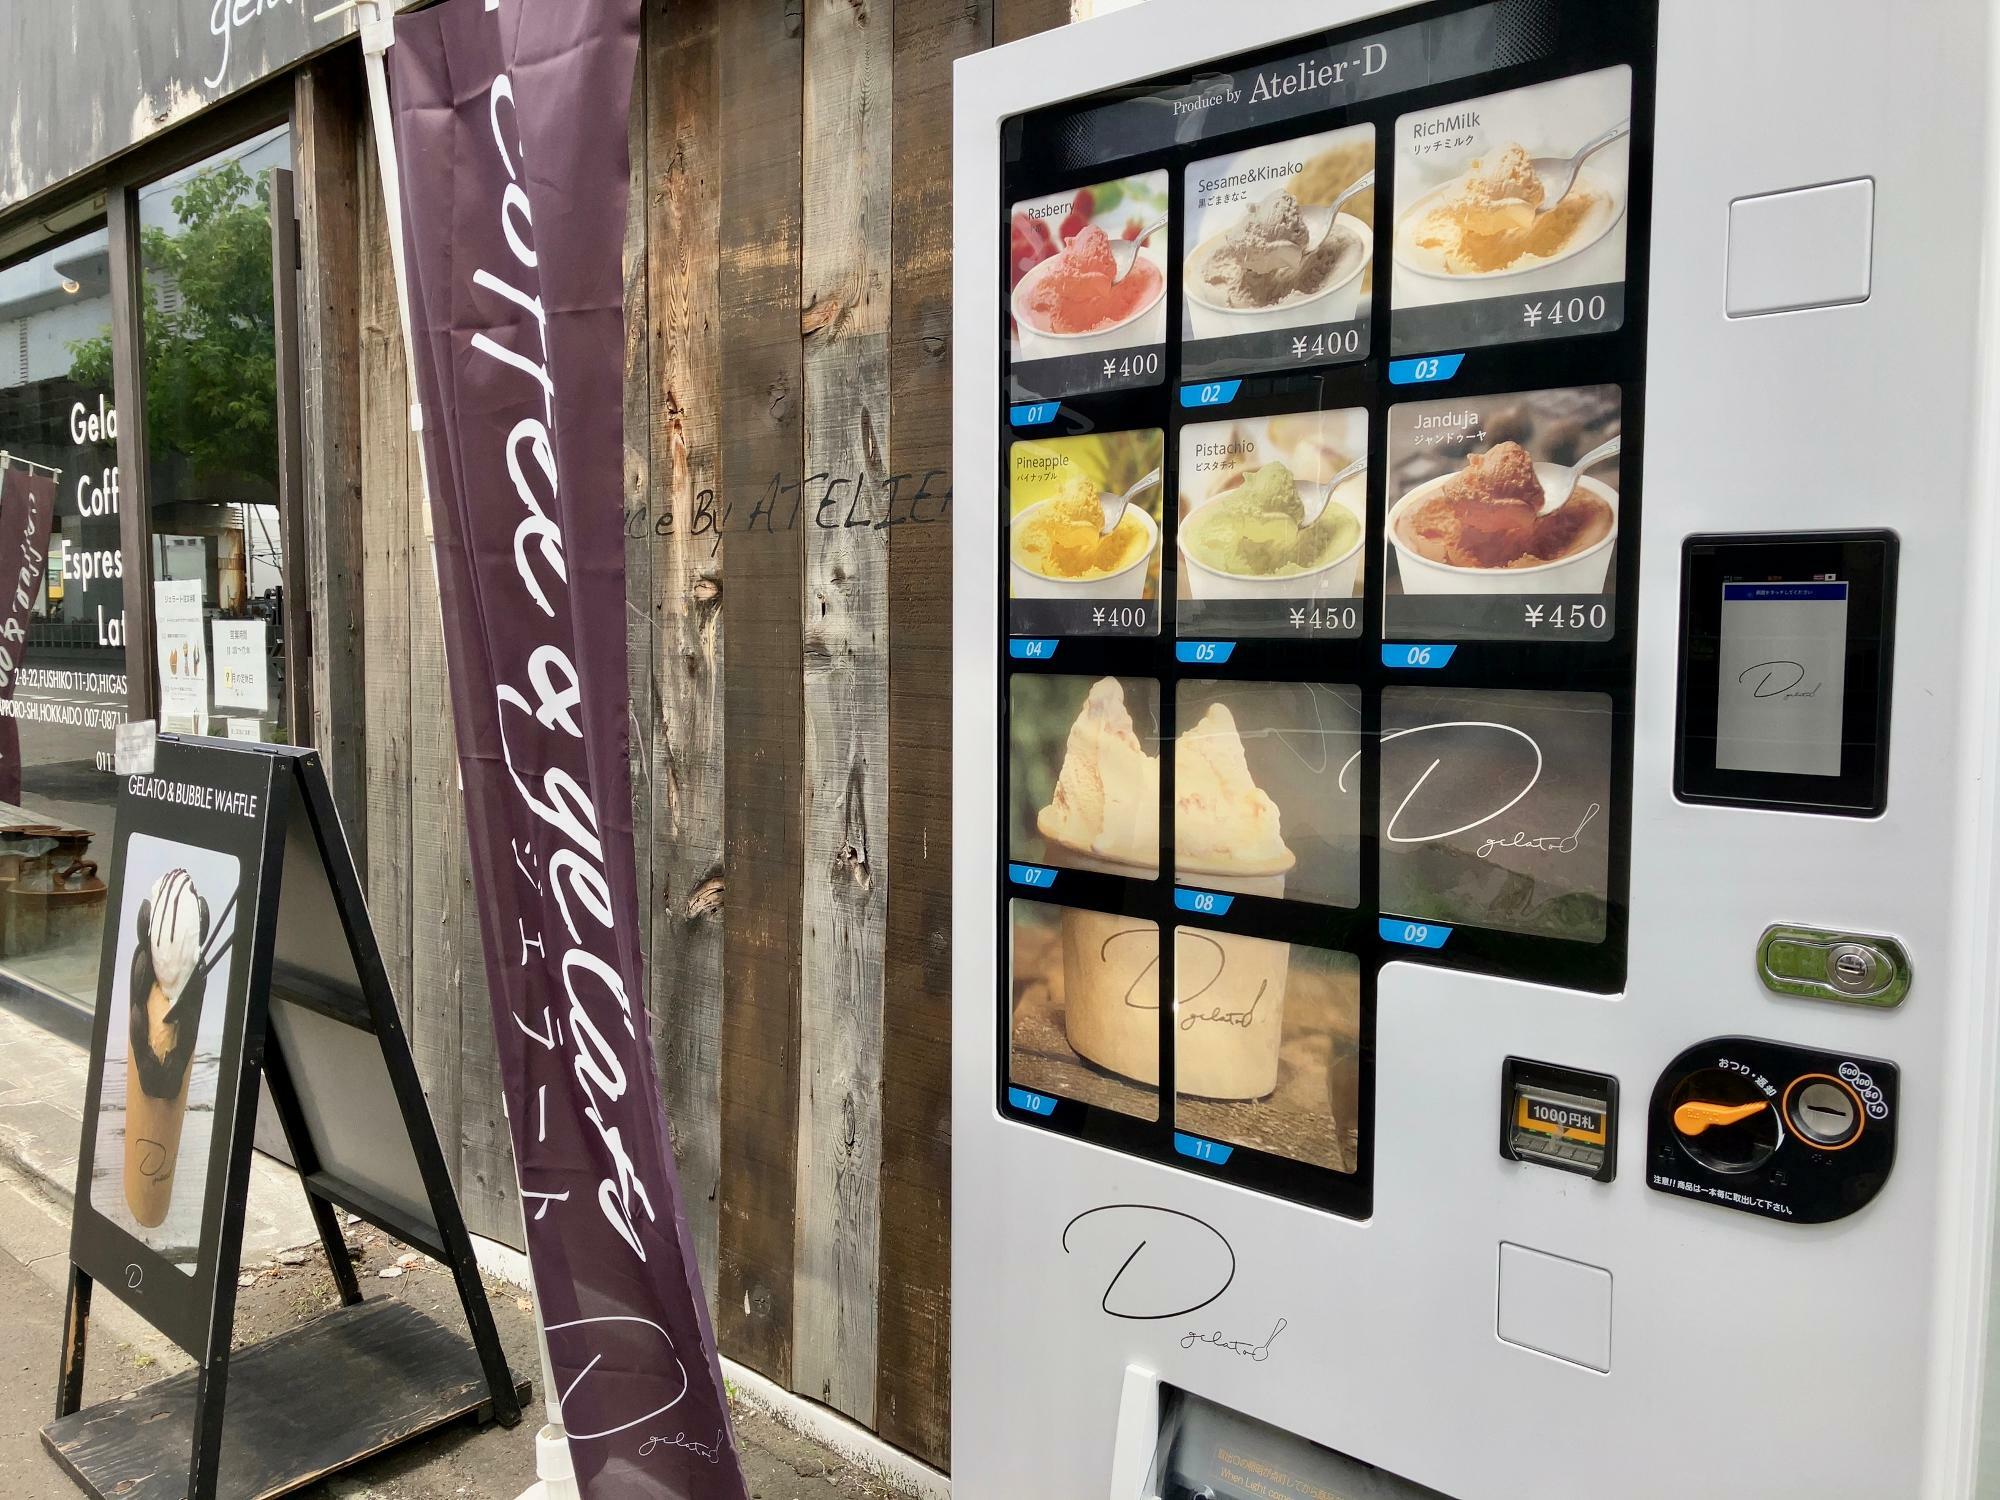 D gelato（ディージェラート）の店舗外には自動販売機がありますよ。